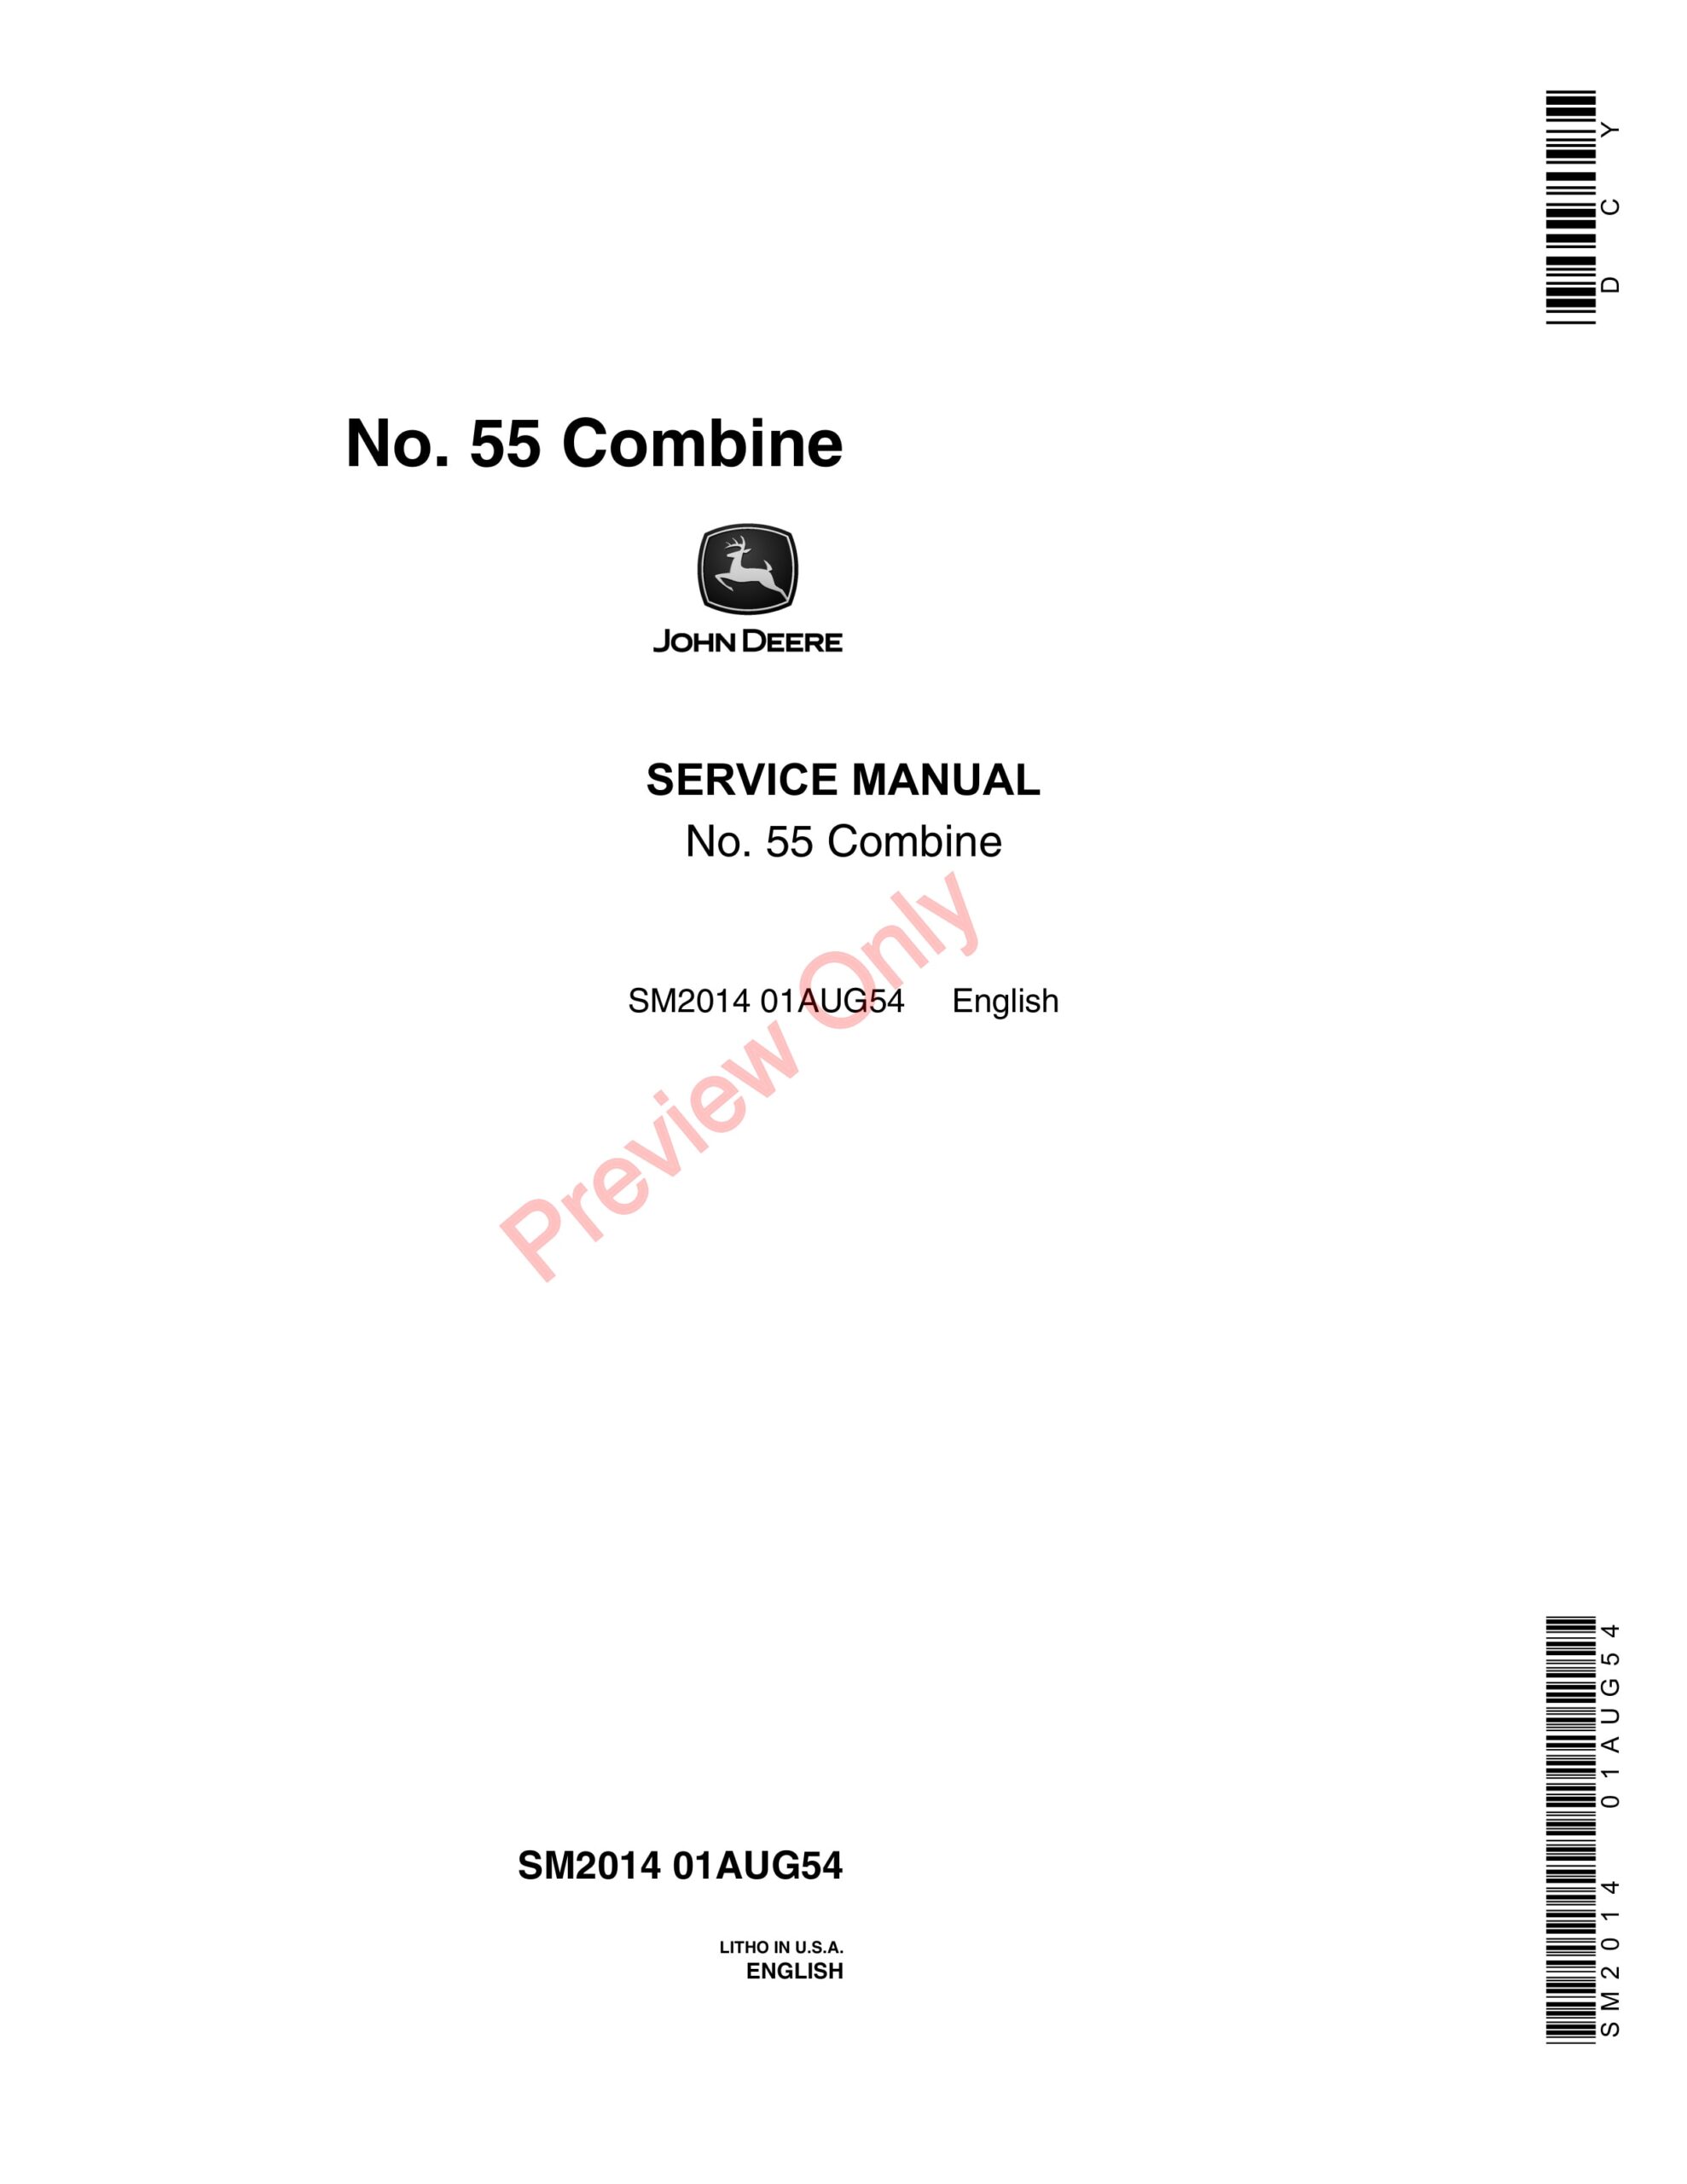 John Deere 55 Combine Service Manual SM2014 01AUG54-1